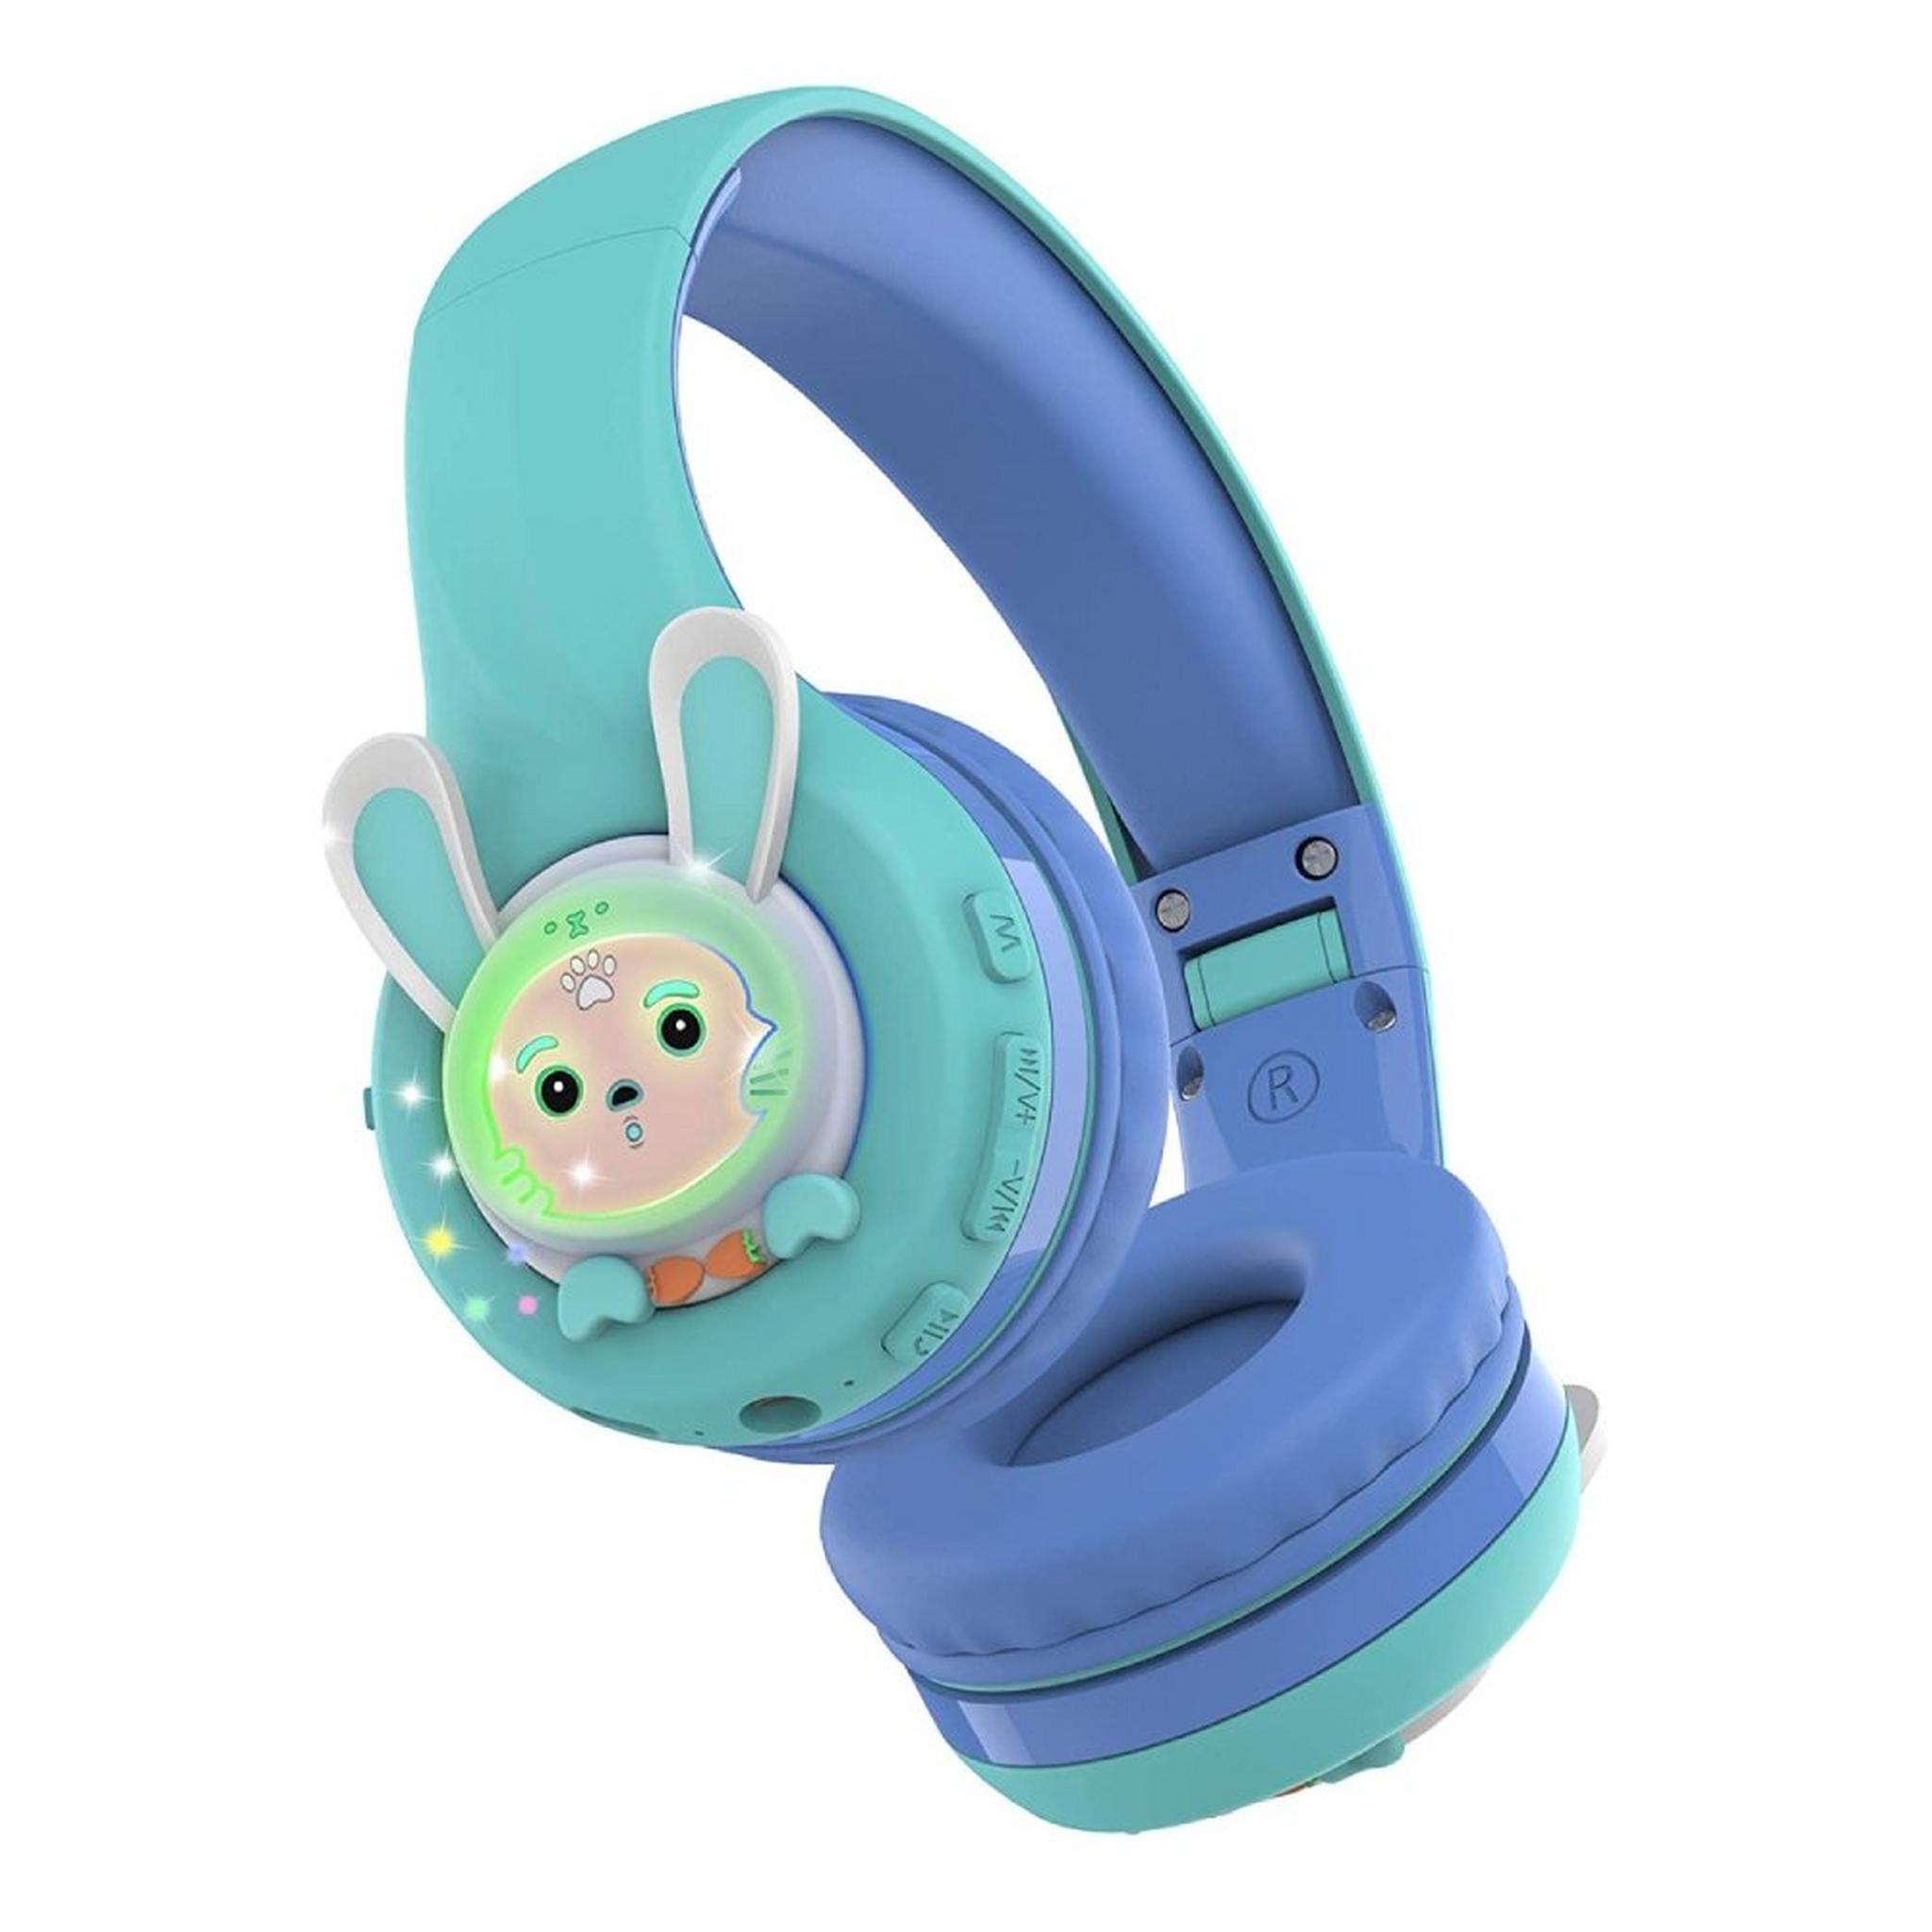 سماعة الأرنب بتقنية البلوتوث للأطفال من ريبوكس - أزرق / أخضر